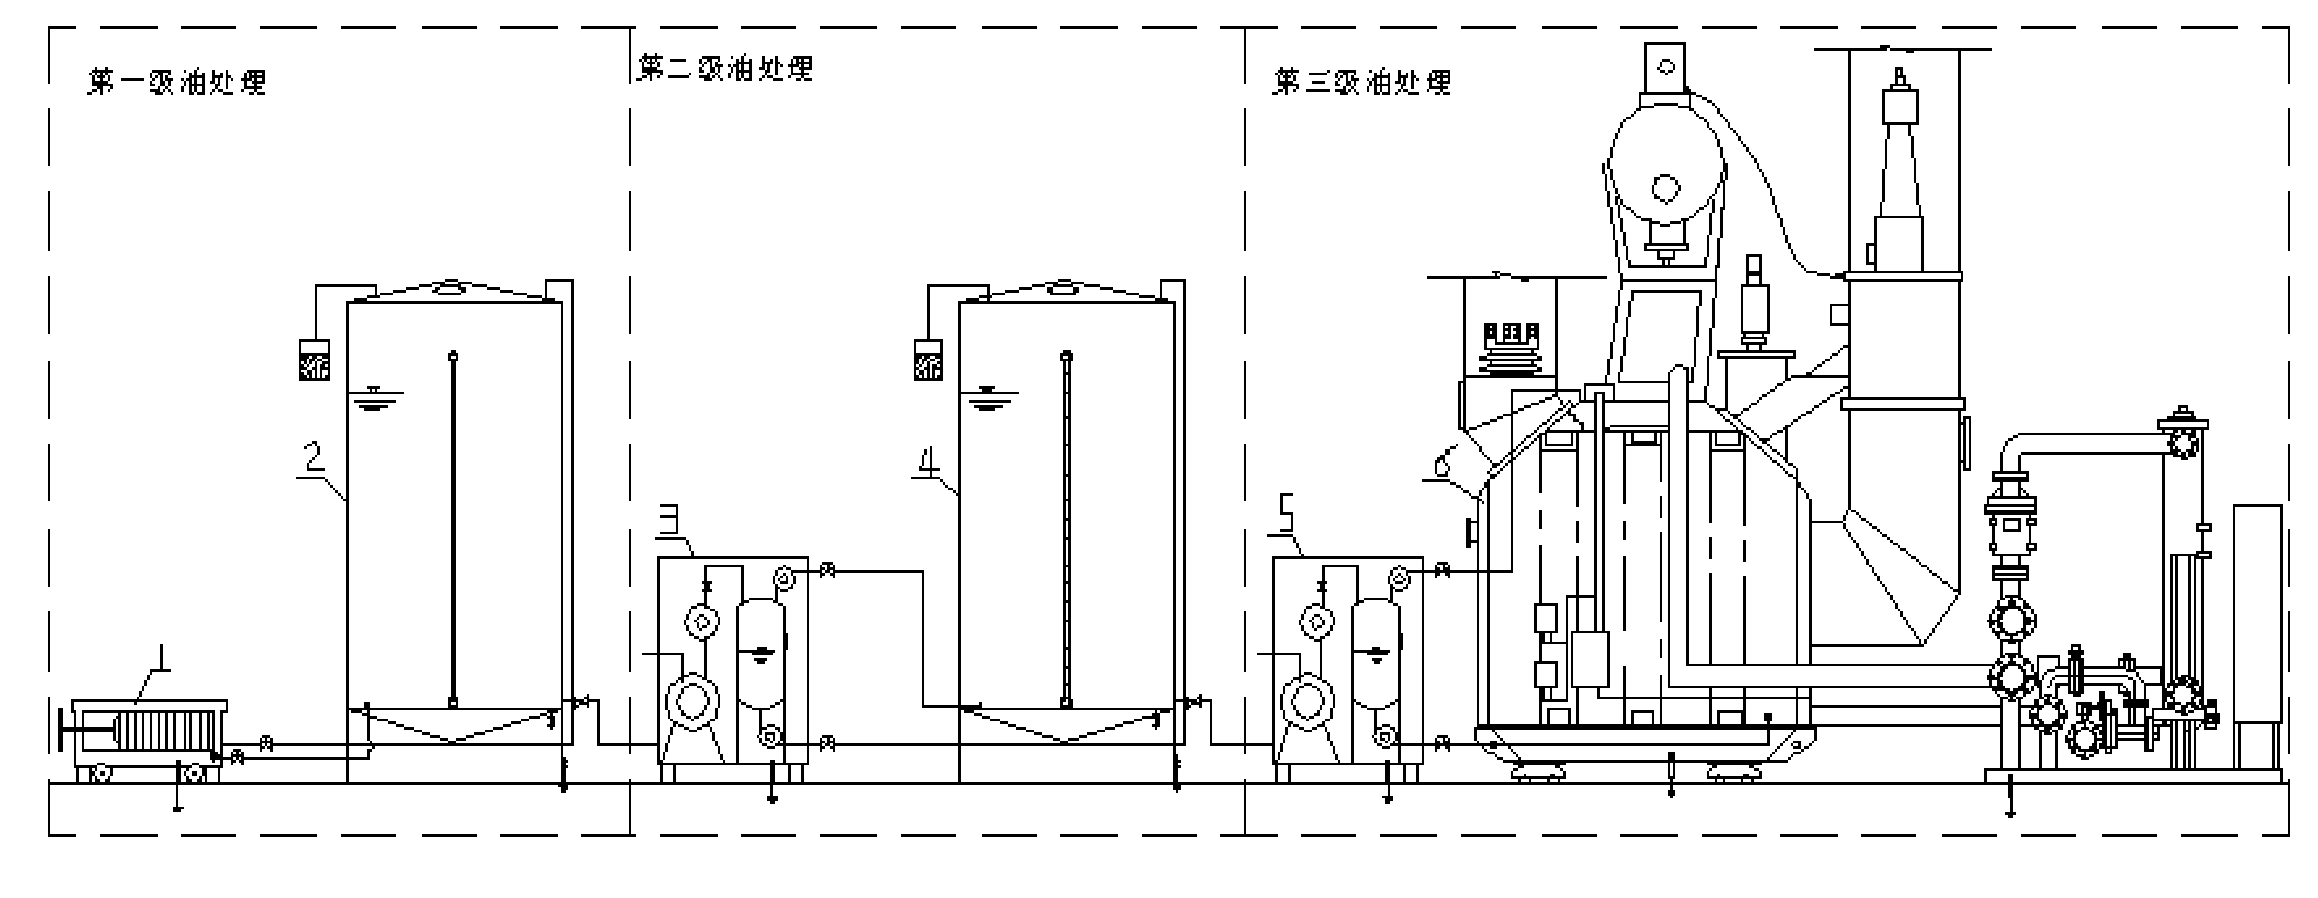 Method for treating insulating oil for transformer